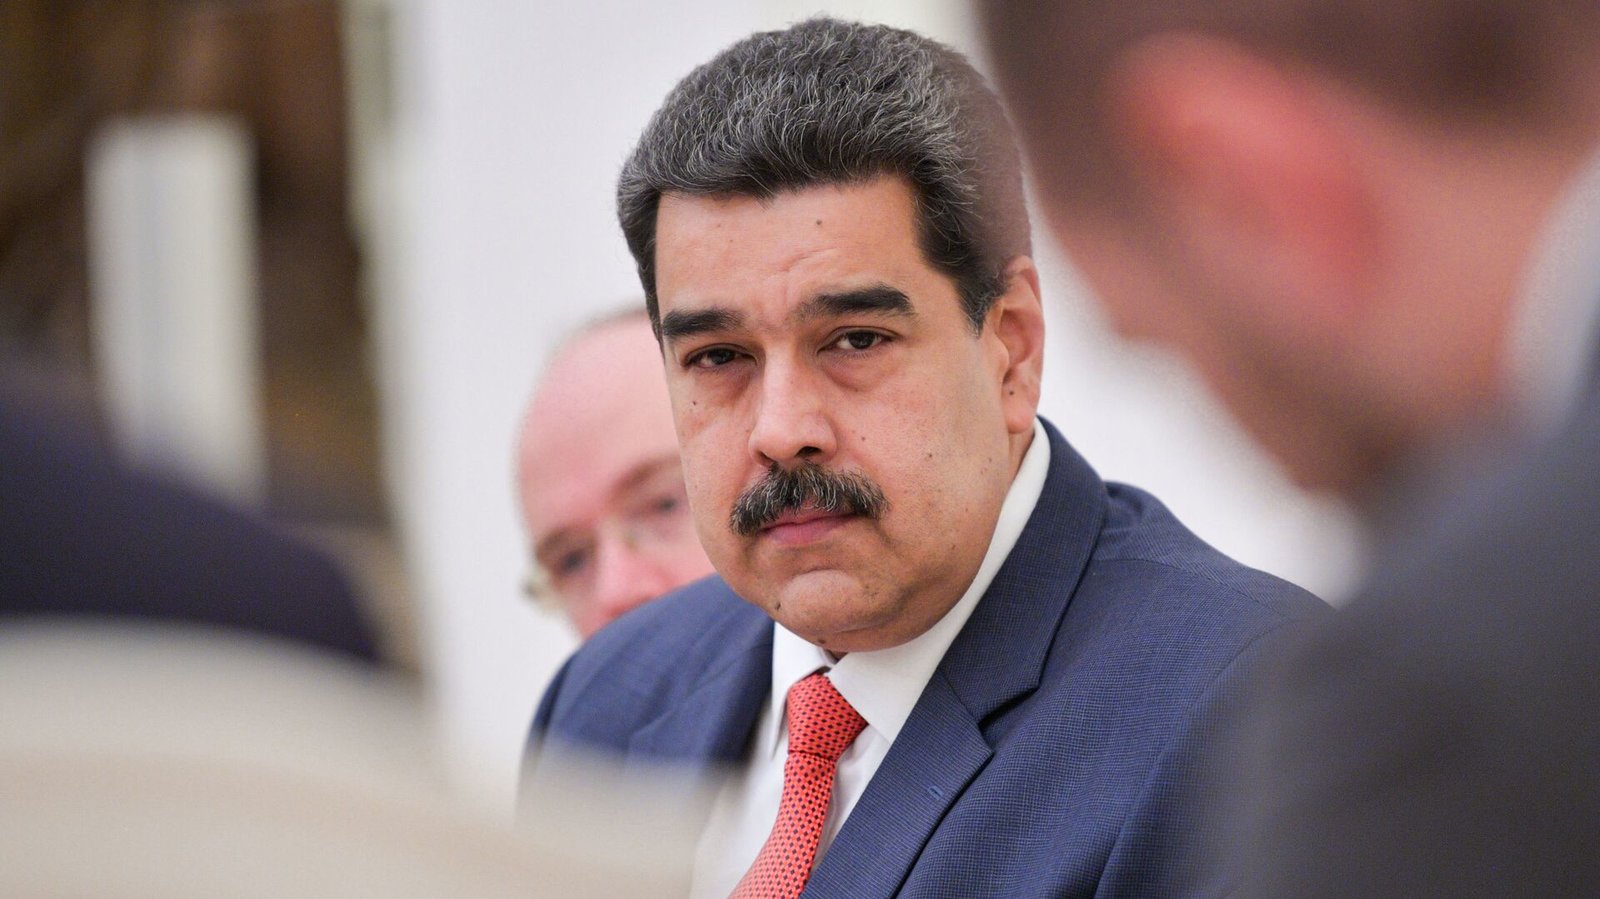 Maduro acusa a Duque de ataques a refinerías y sistema eléctrico de Venezuela